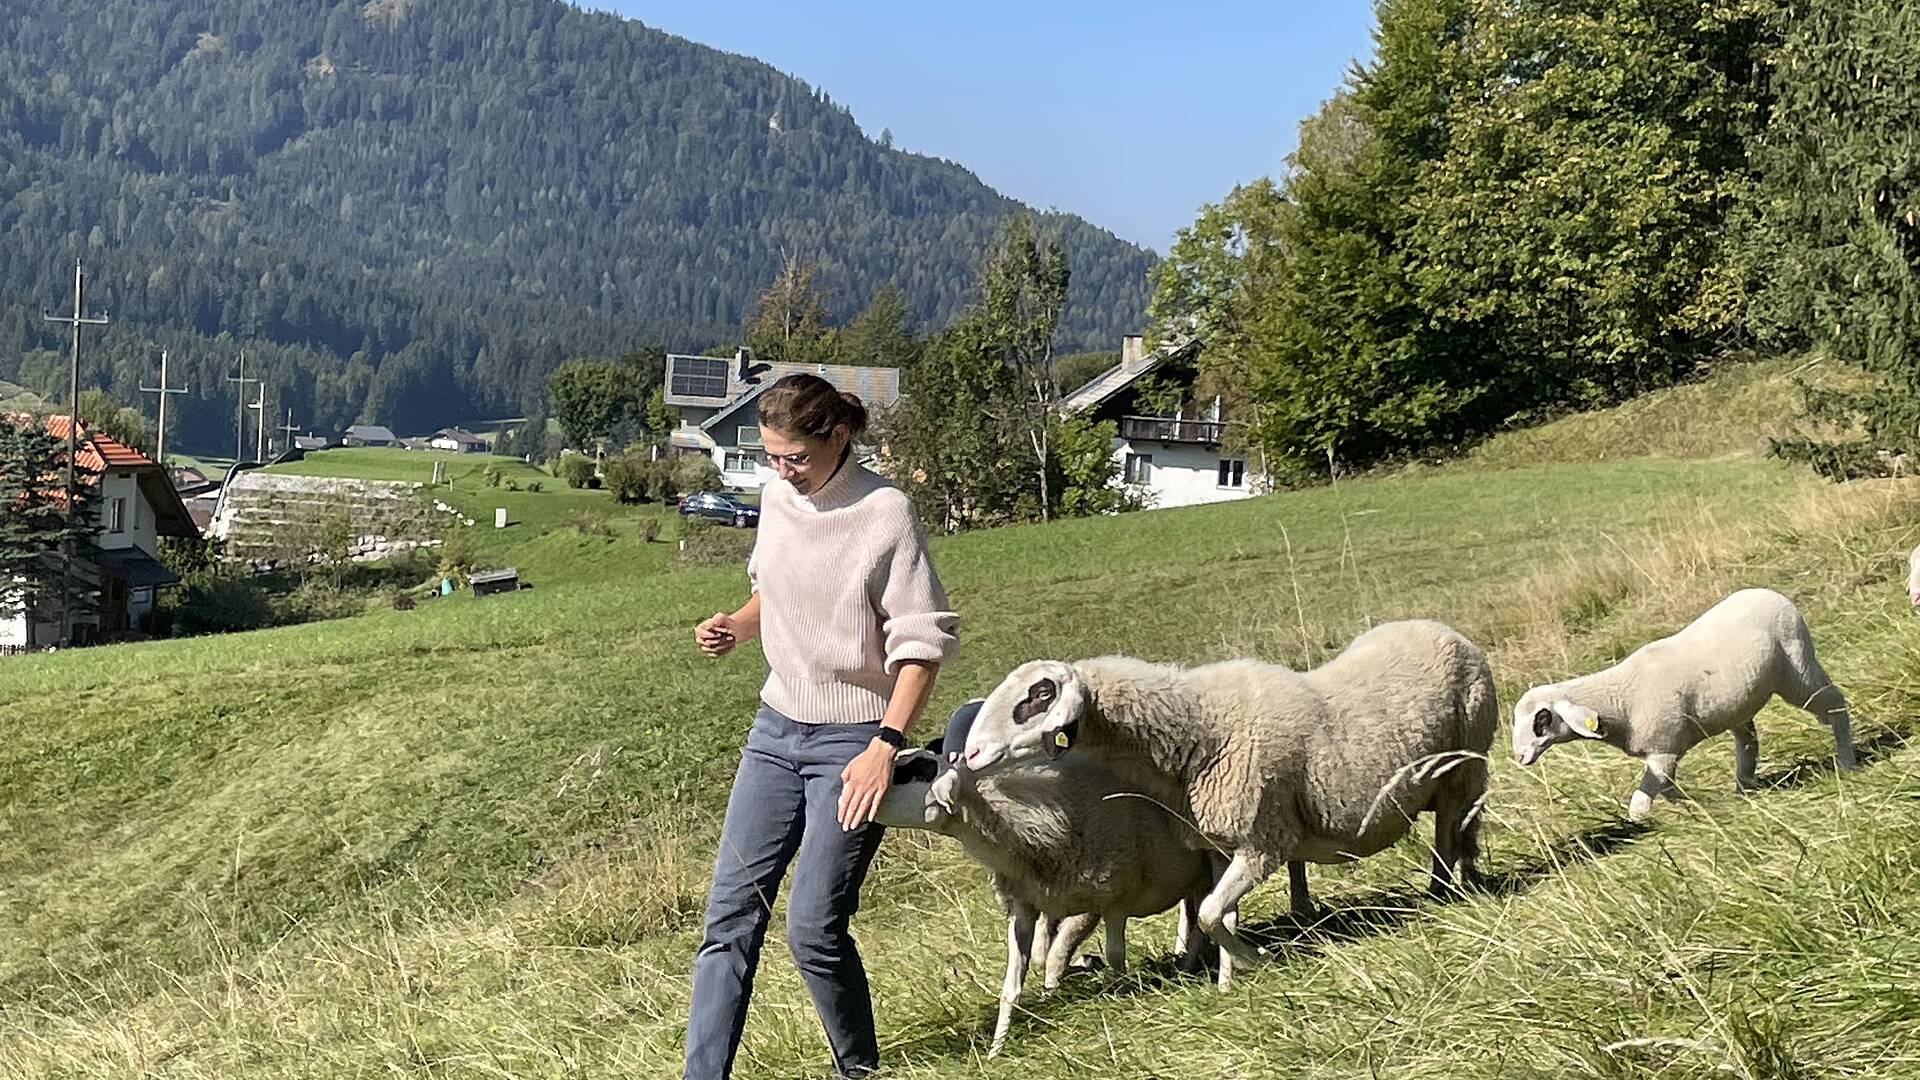 Am Weissensee mit Schafe auf der Weide.